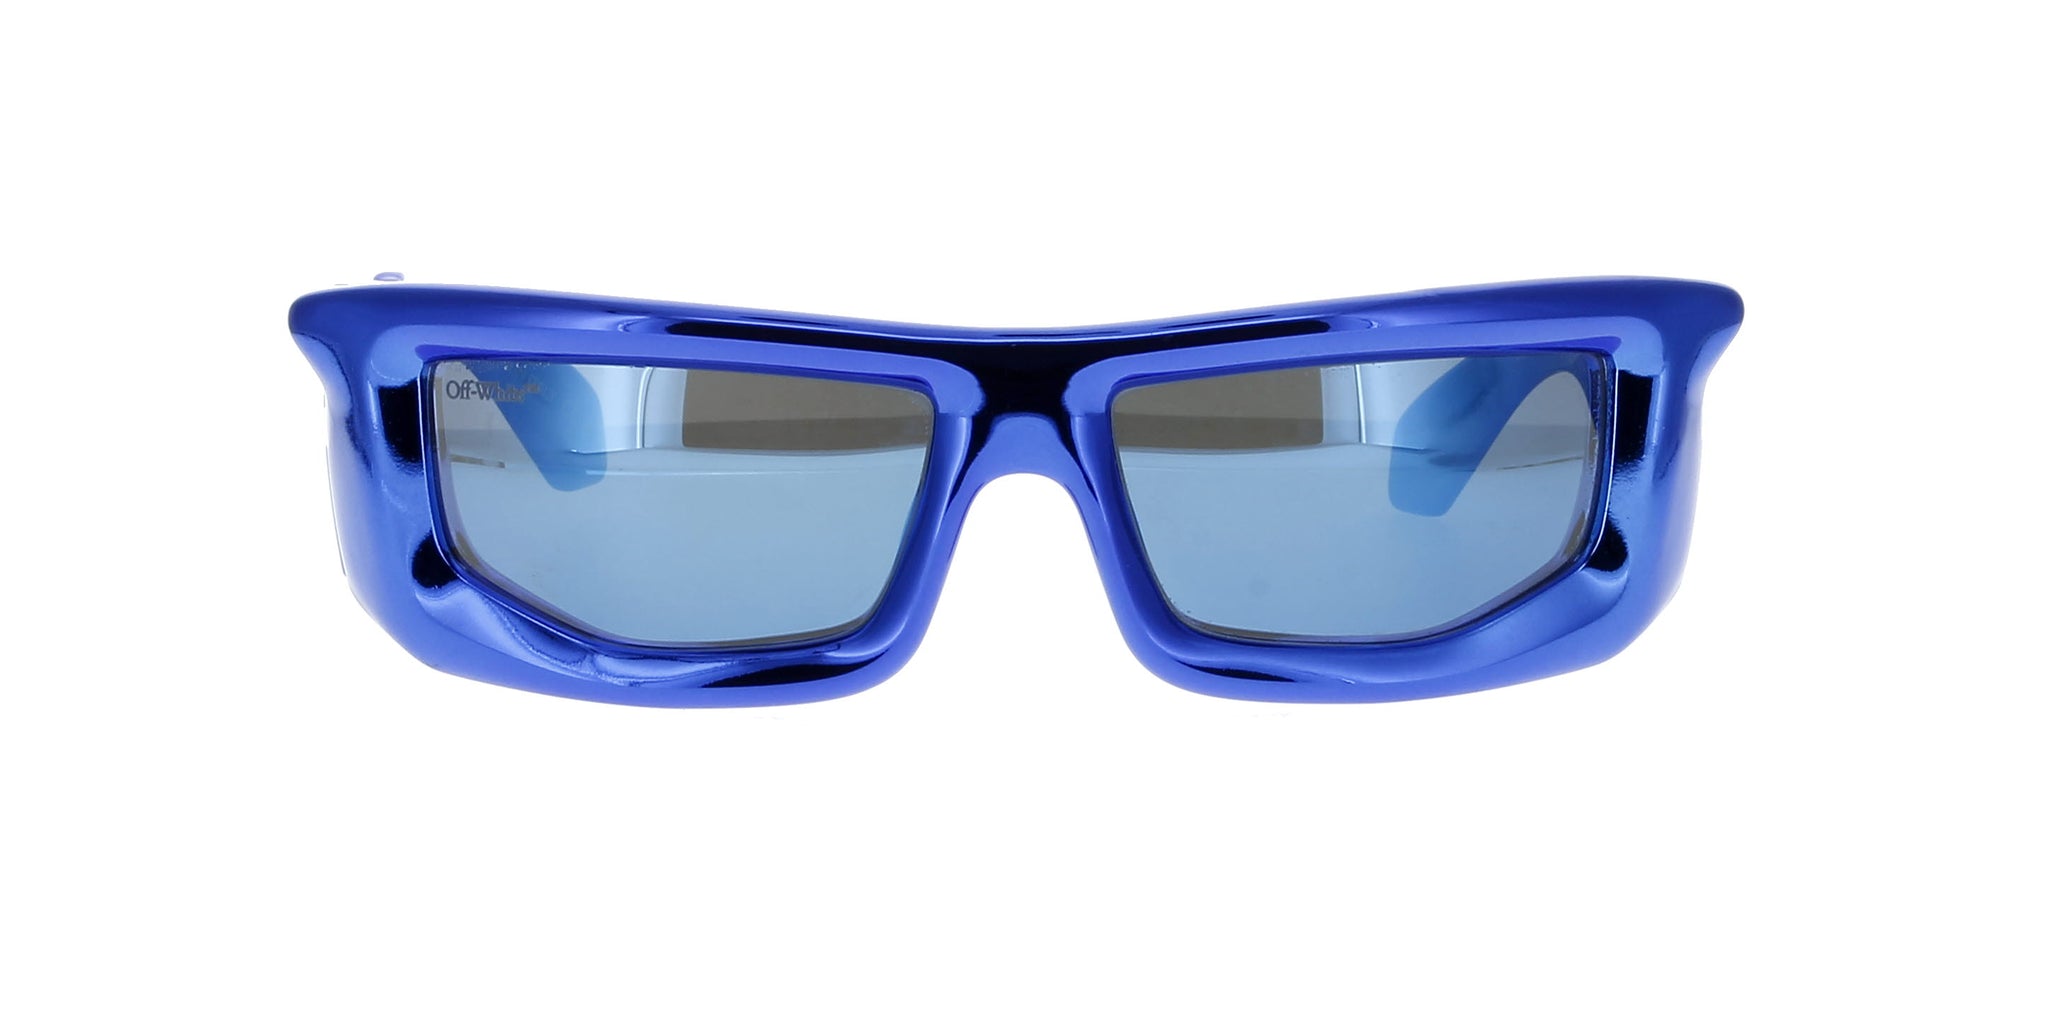 Off-White Vulcanite Sunglasses in translucent